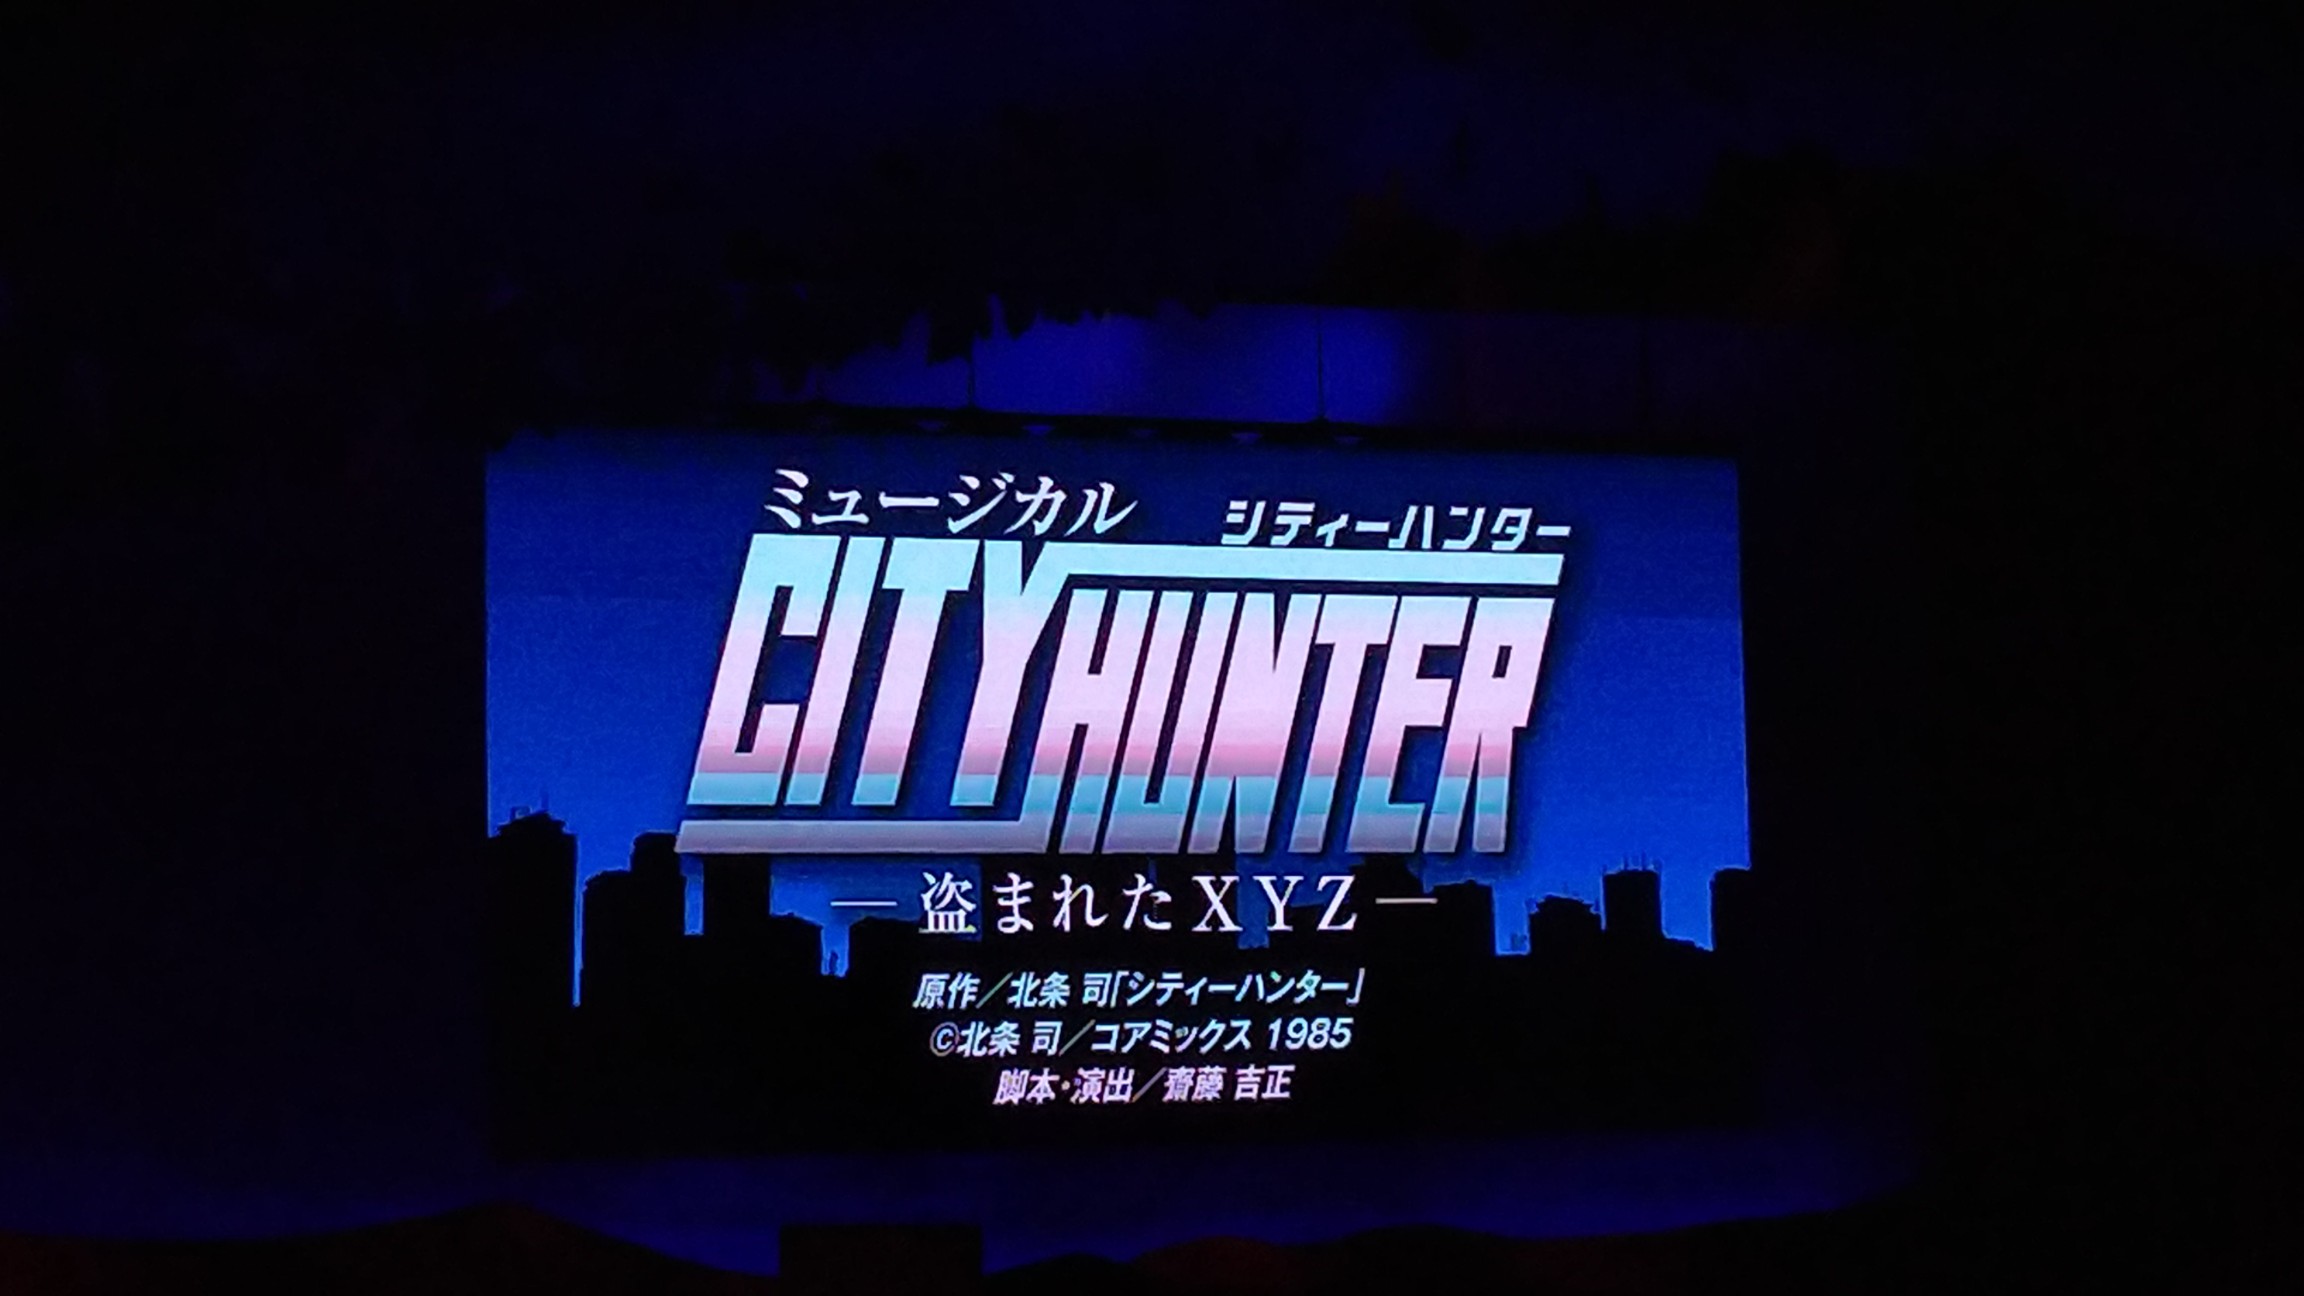 感想 熱量maxの2本立て 雪組 City Hunter Fire Fever 21 8 8 宝塚大劇場 まるかて